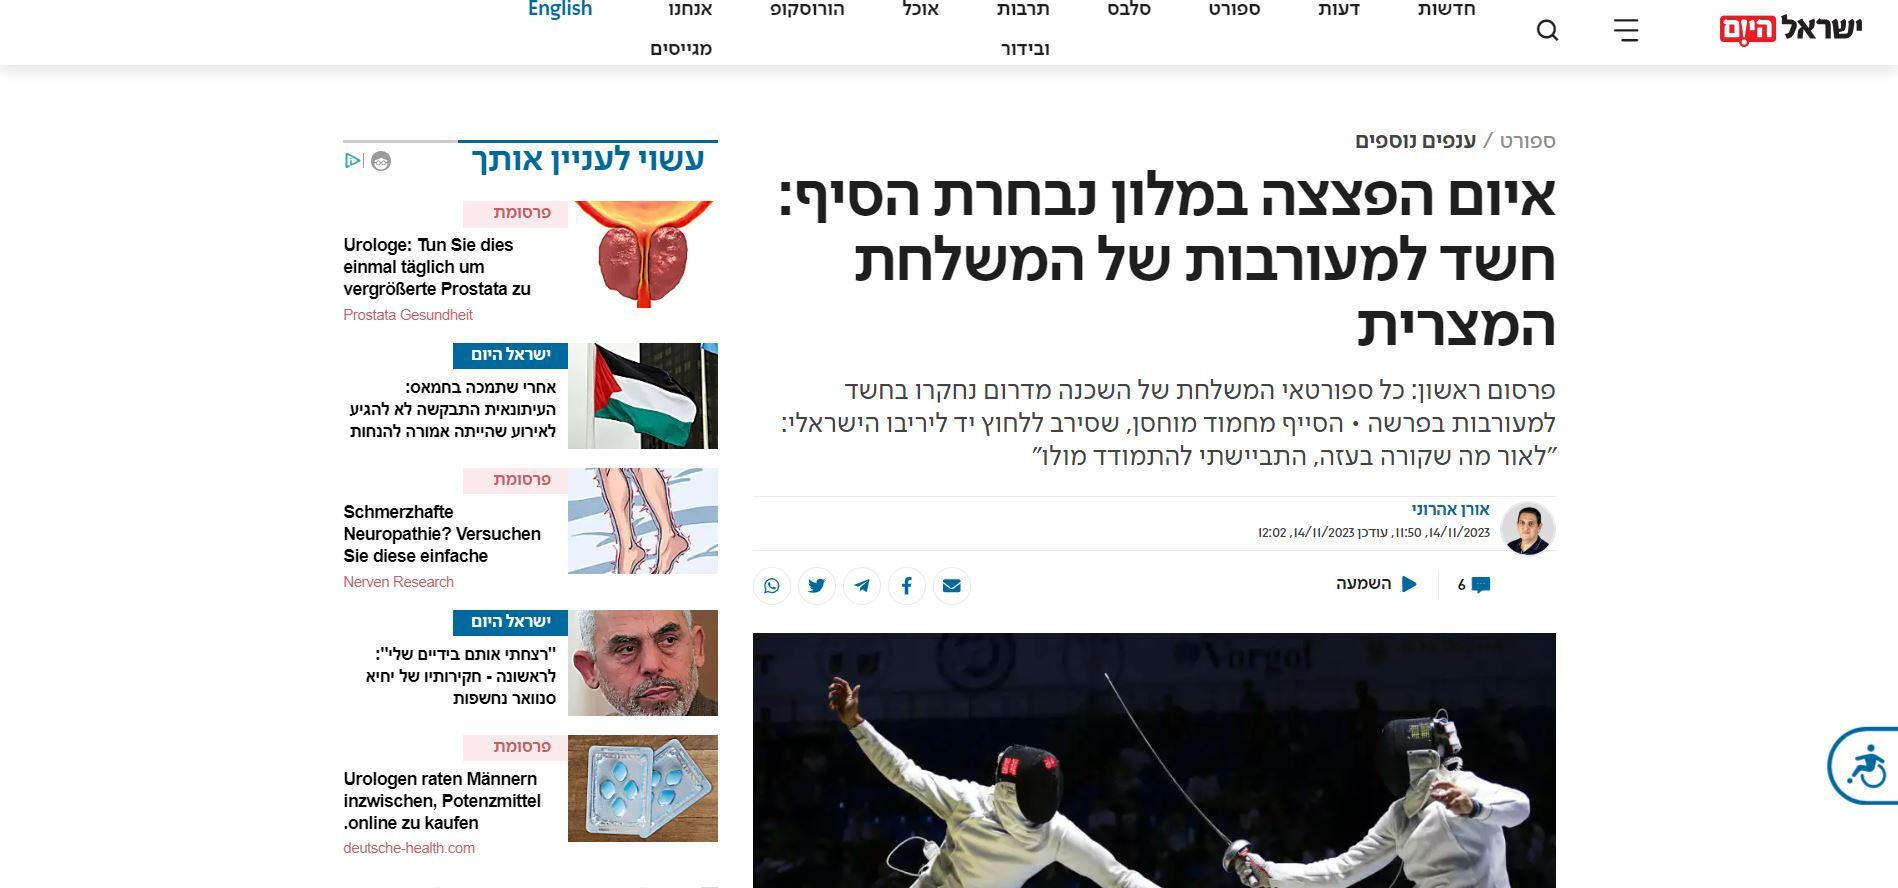 وسائل الإعلام العبرية تلوم المنتخب المصري للمبارزة بعد تهديد بوجود قنبلة ضد مقر إقامة الفريق الإسرائيلي